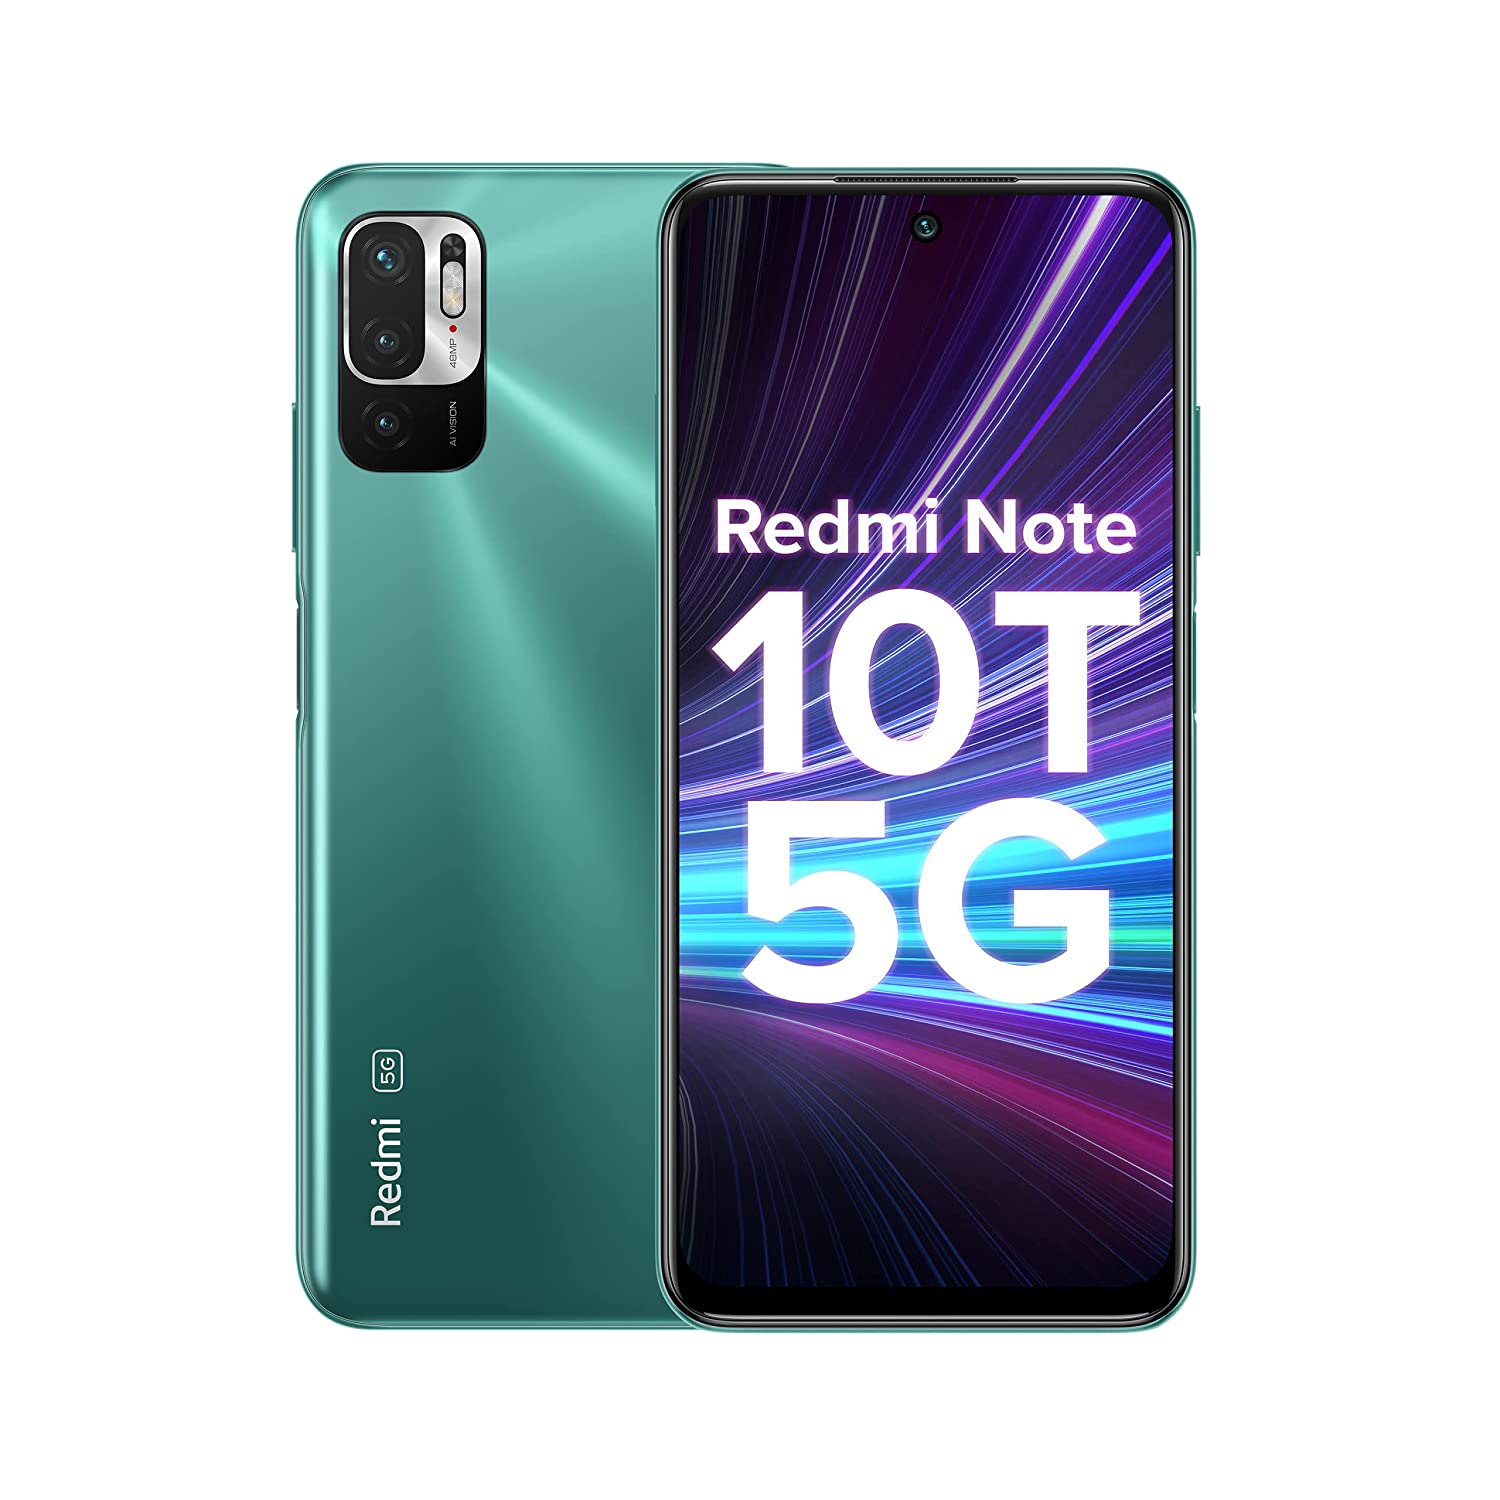 Xiaomi Redmi Note 10T 5G